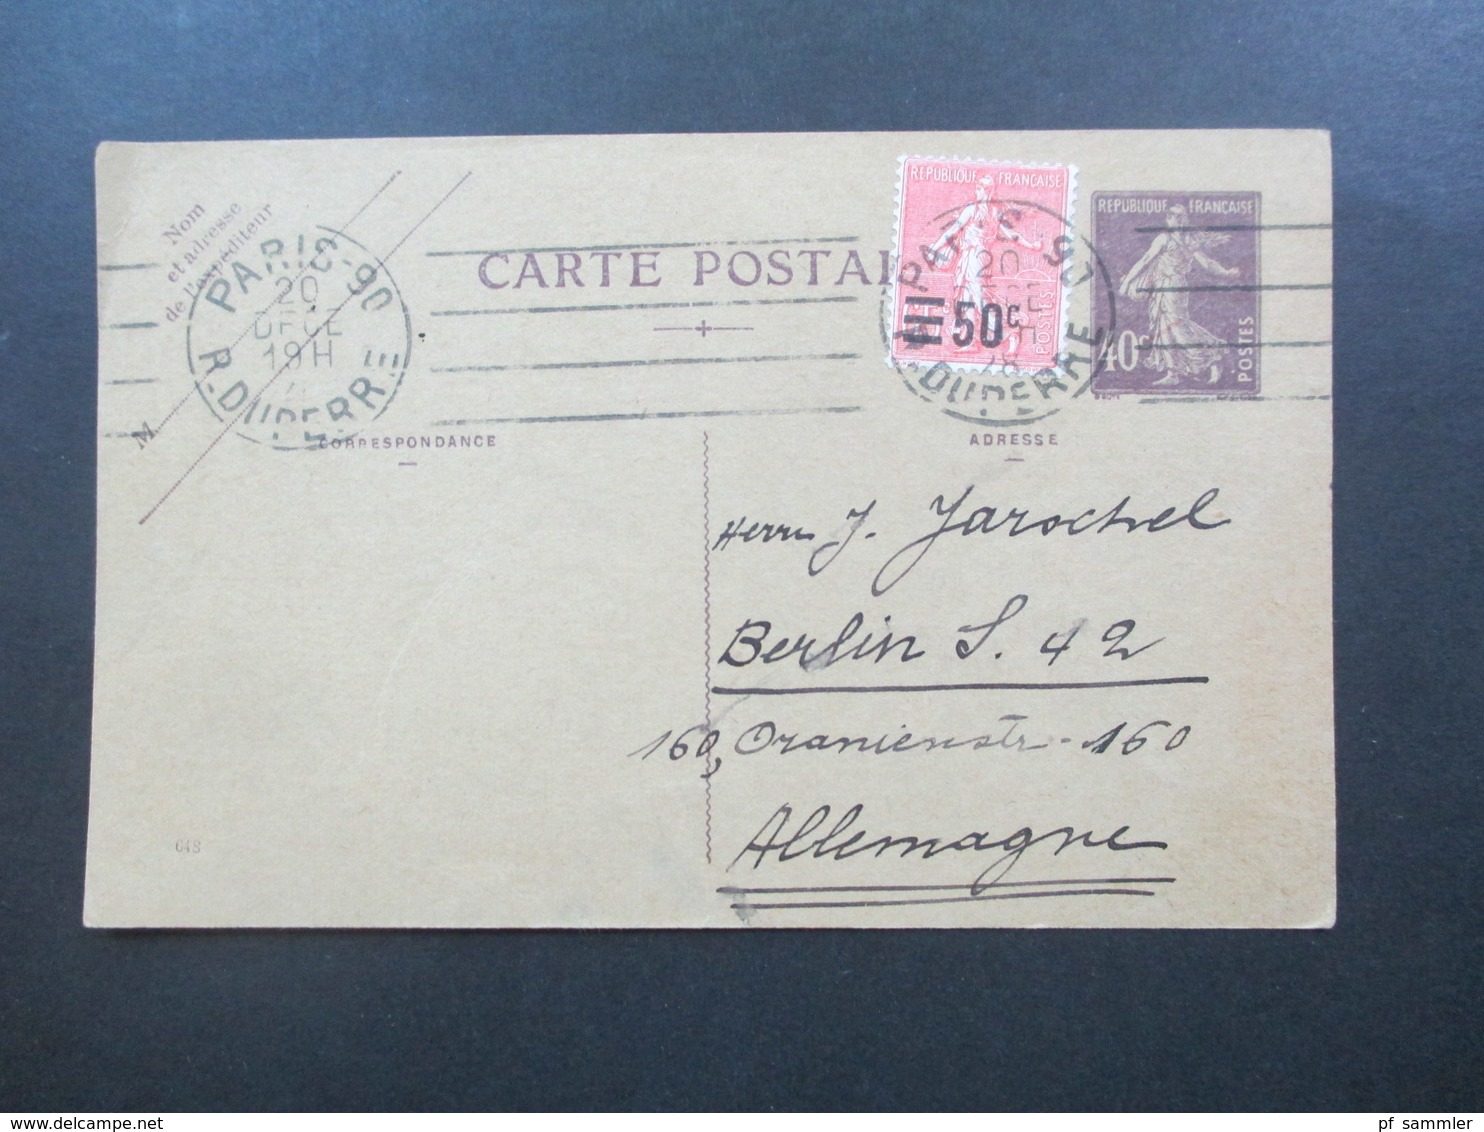 Frankreich 1928 Ganzsache Mit Zusatzfrankatur Nr. 203 Paris 90 R.Duperre Nach Berlin. Jean Richard Rue Des Martyrs - Covers & Documents